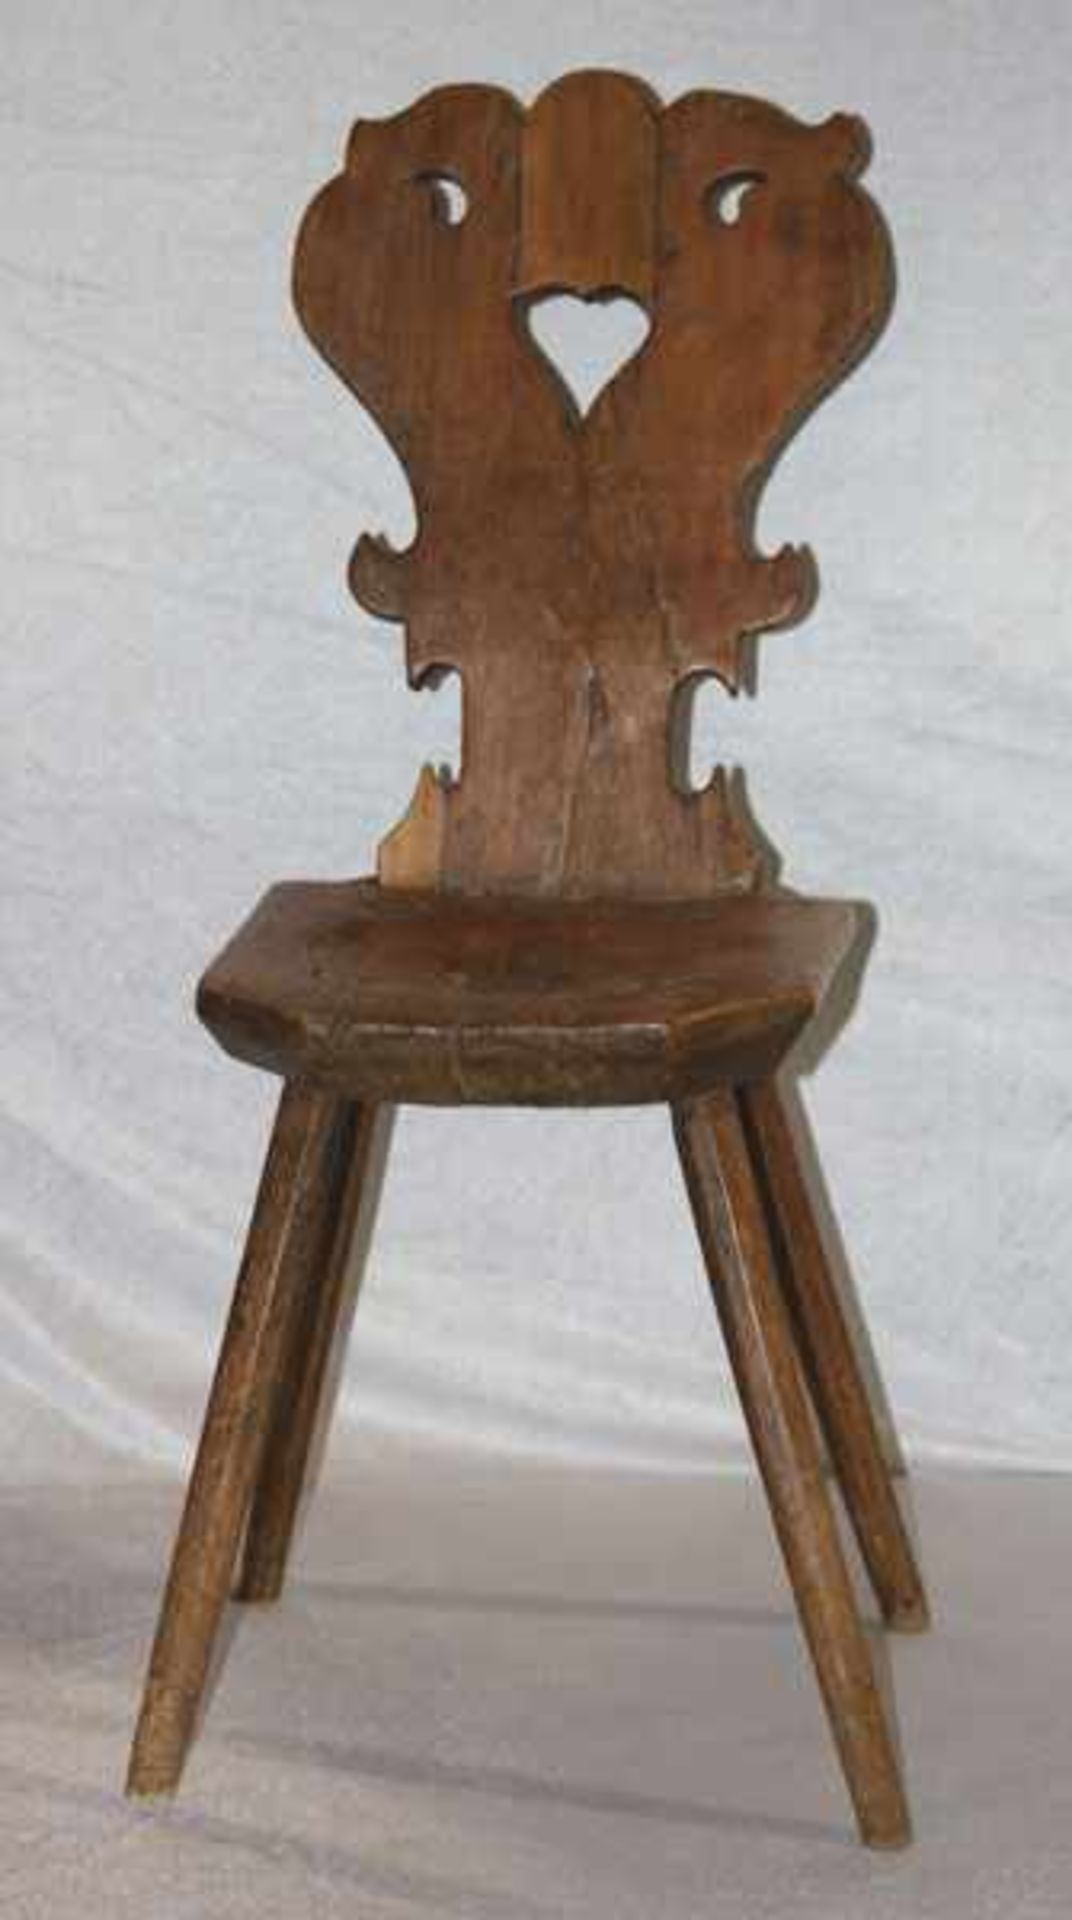 Brettstuhl, Nadelholz, um 1800, H 83 cm, B 31 cm, T 33 cm, Alters- und Gebrauchsspuren